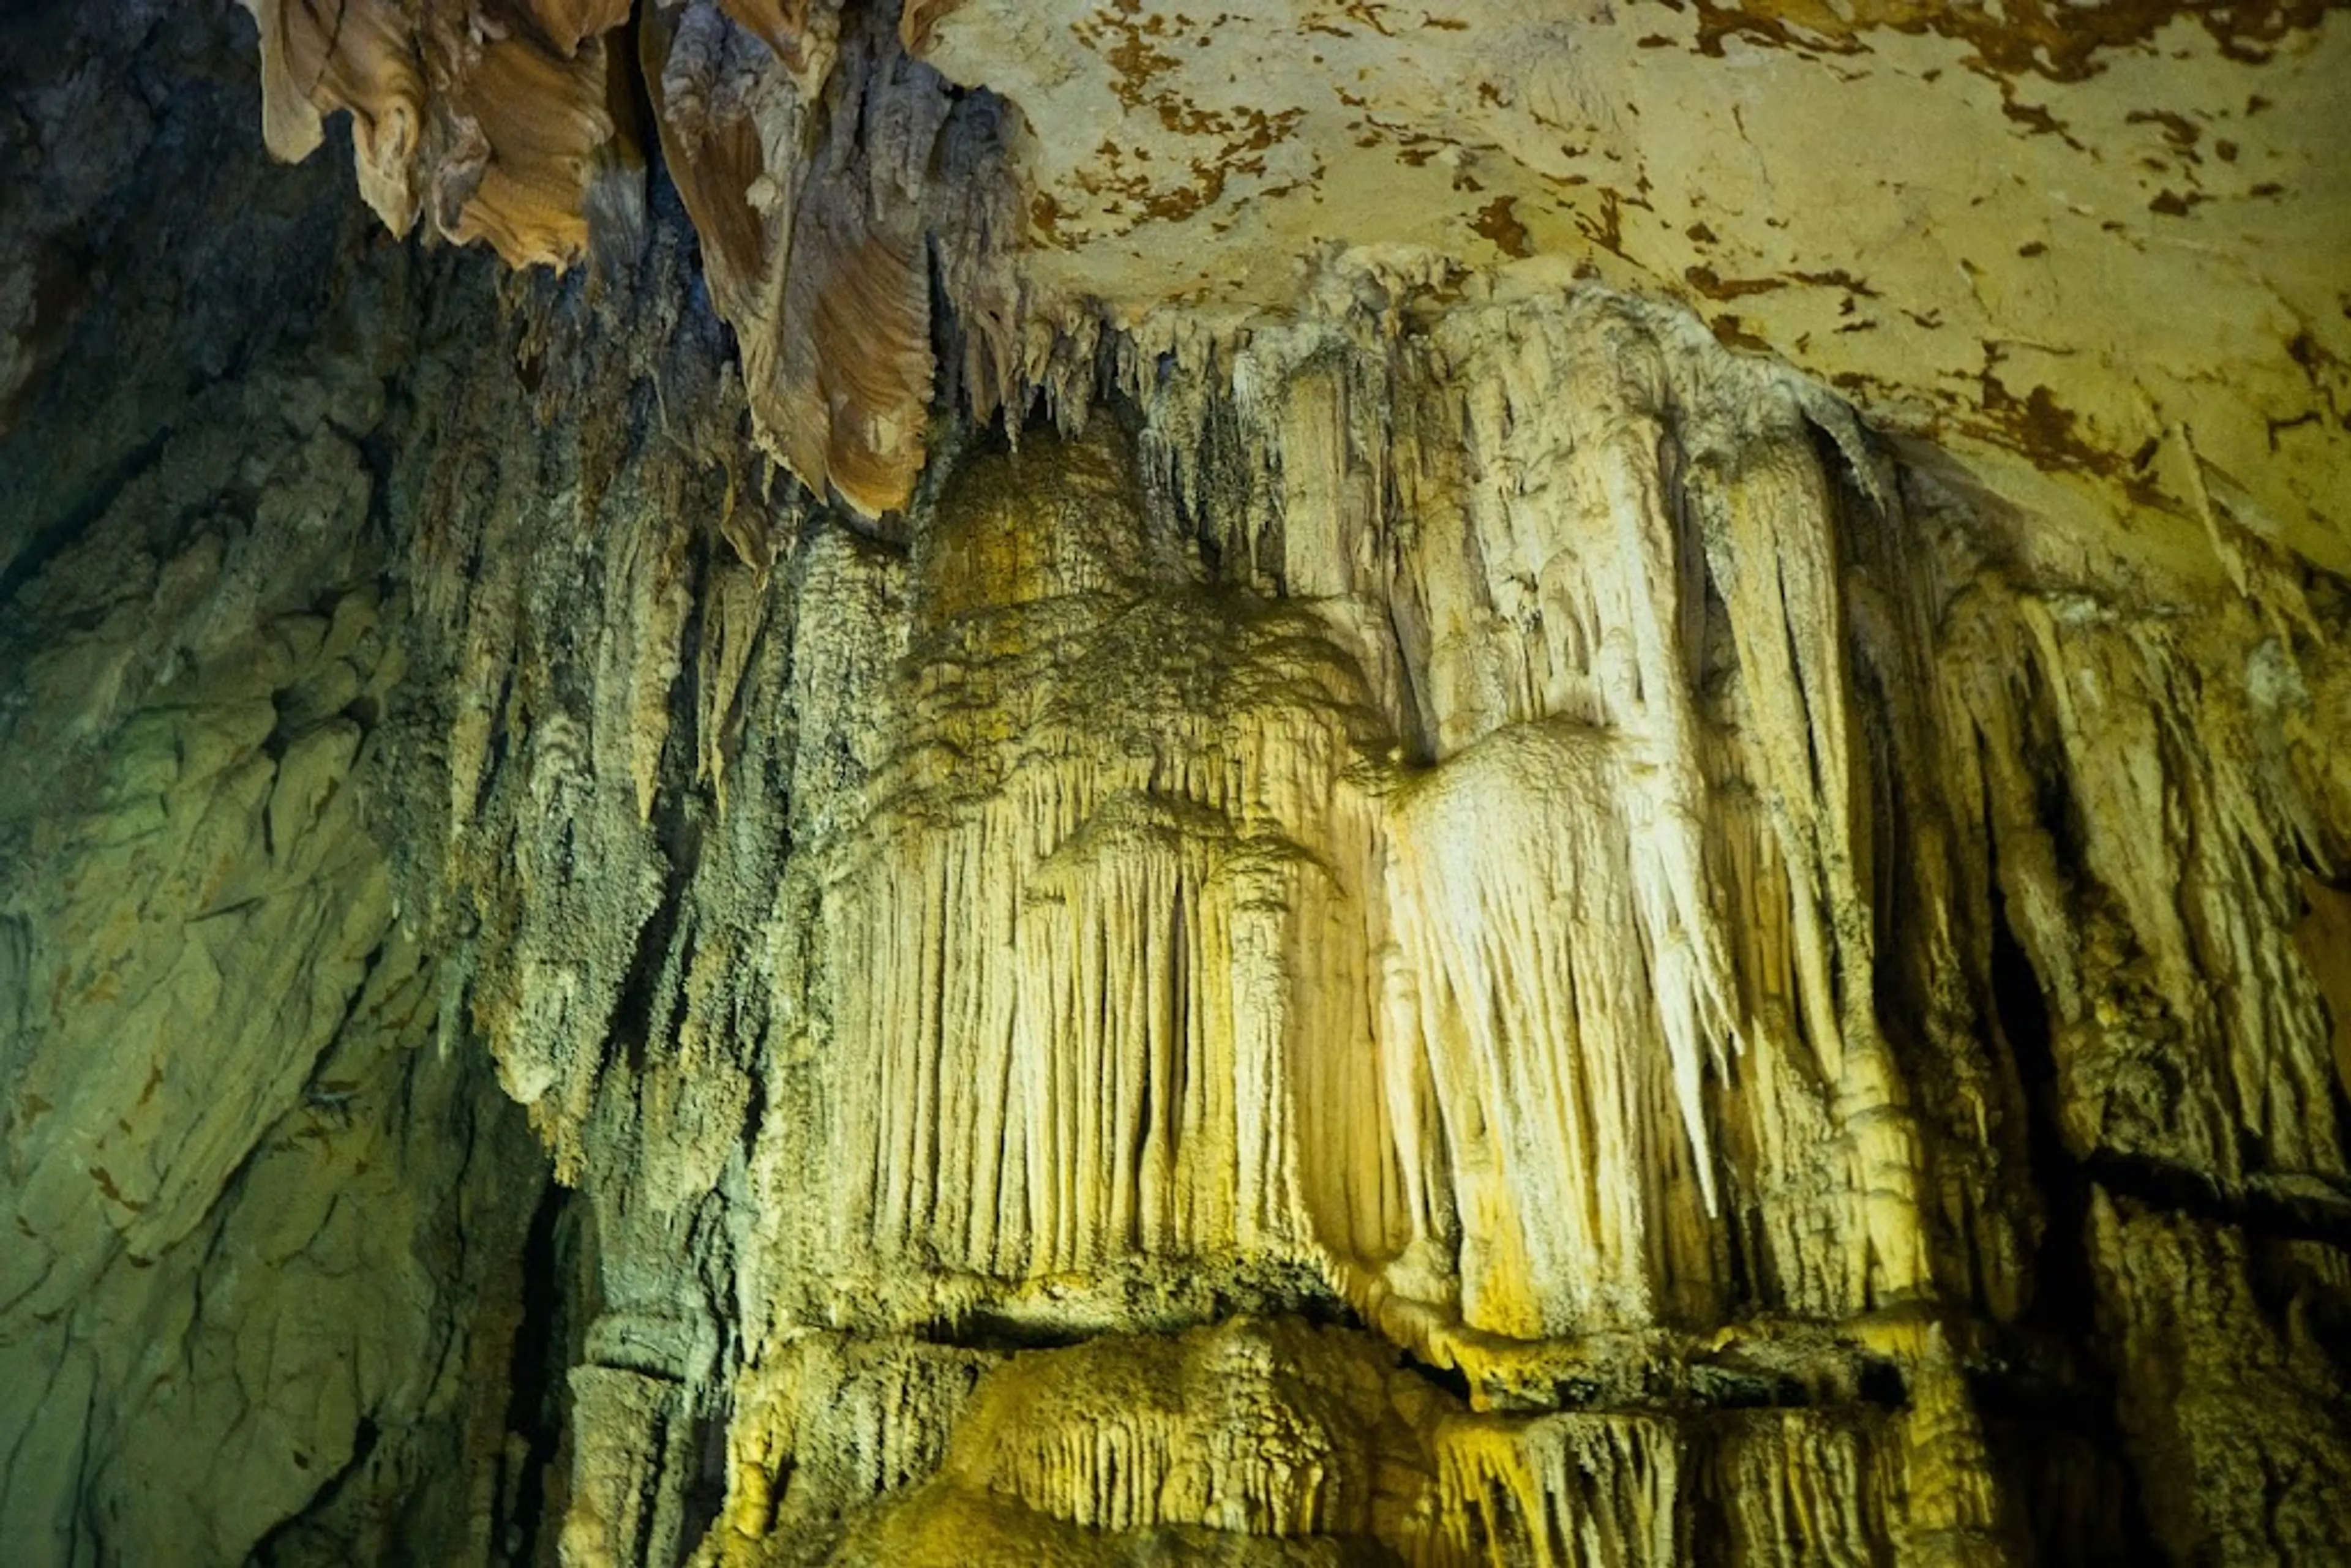 Pakarang Cave